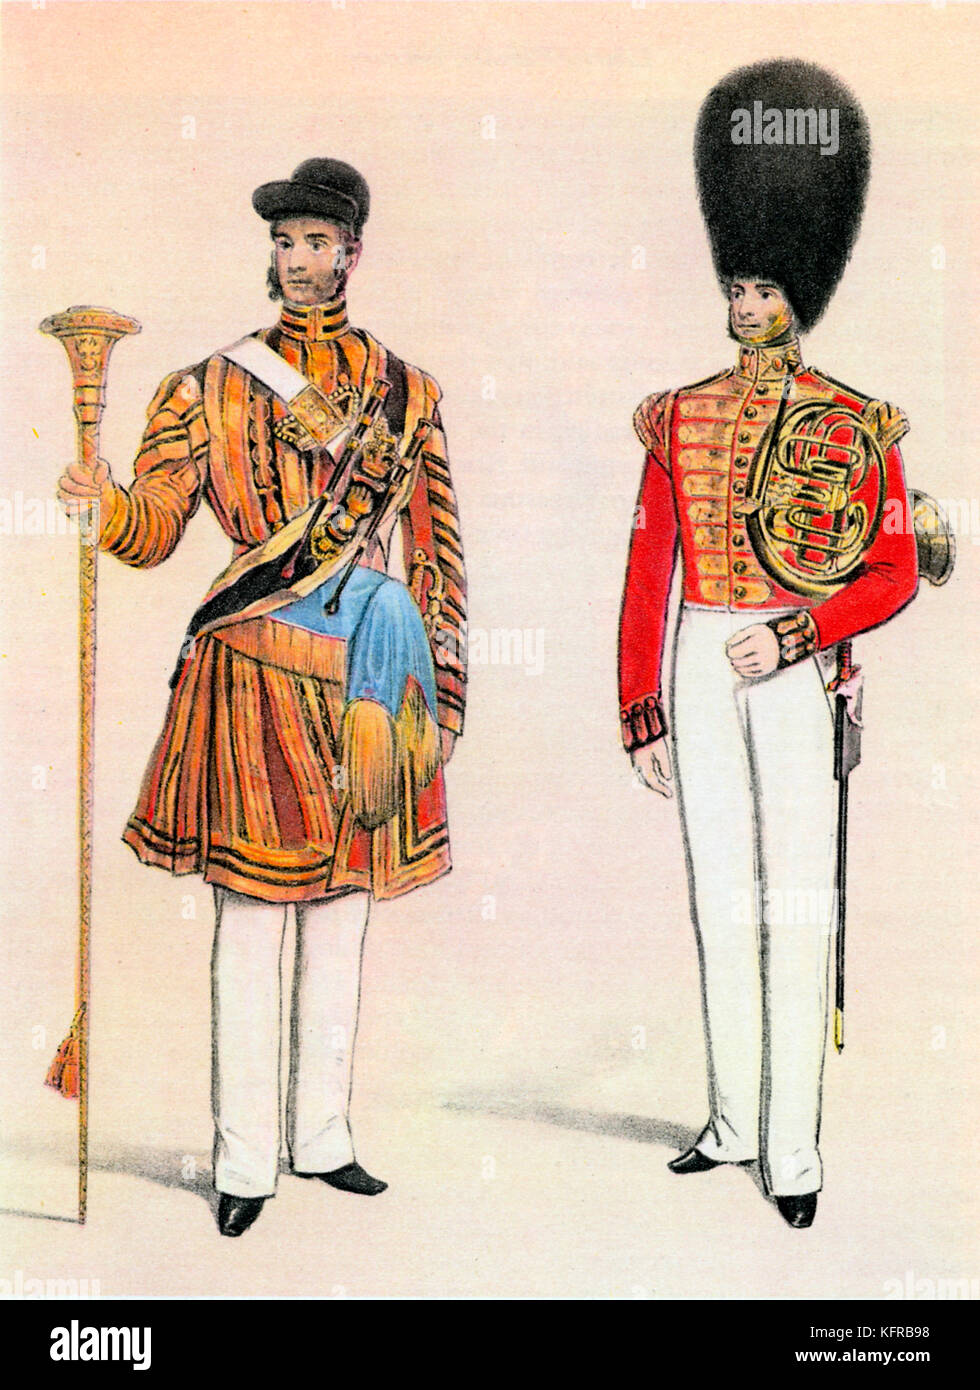 Fanfare et tambour-major du Grenadier Guards - 18e siècle Batterie-fanfare. Lithographie après B. Clayton. Banque D'Images